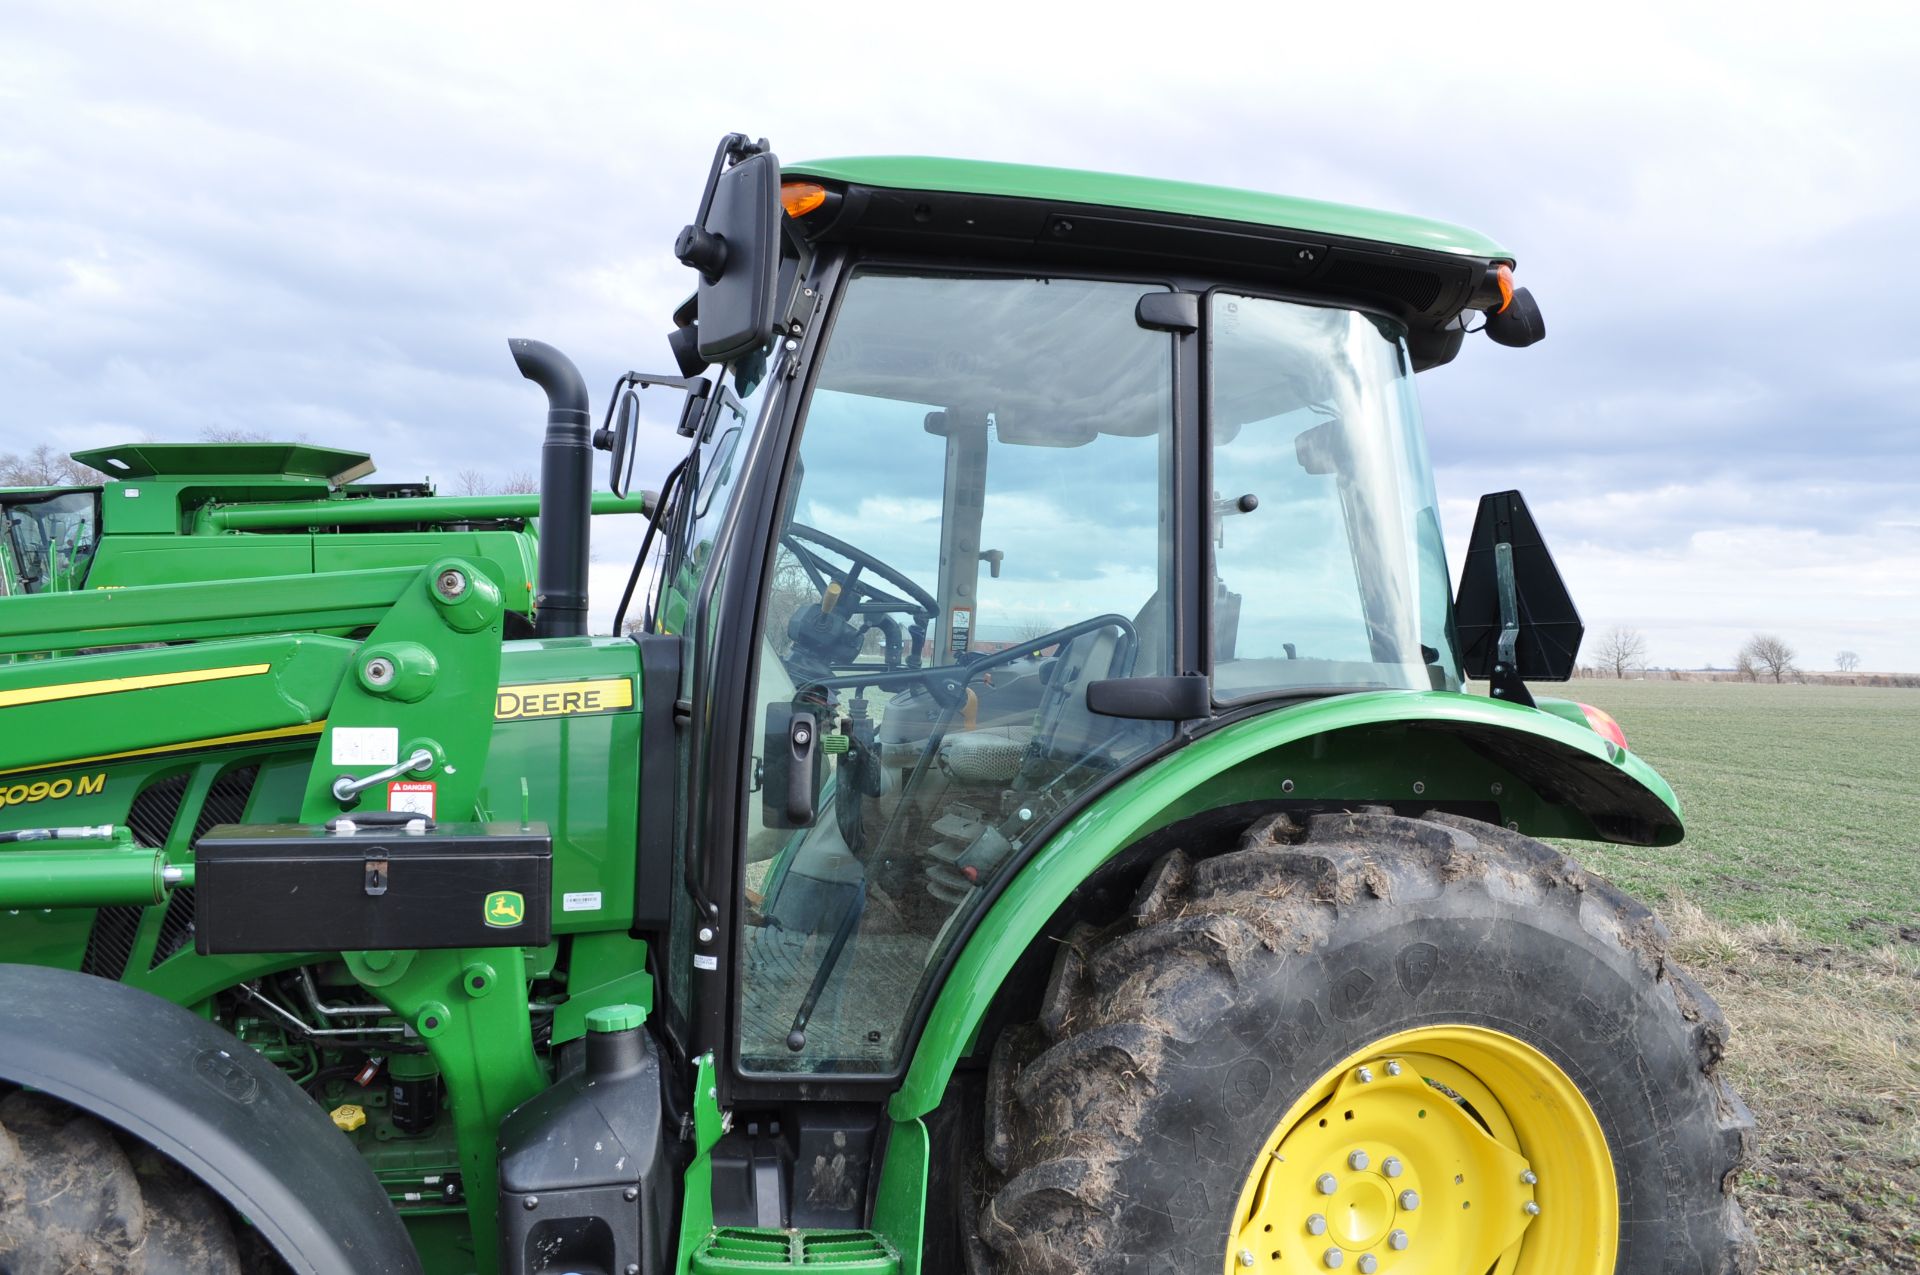 John Deere 5090M tractor - Image 18 of 41